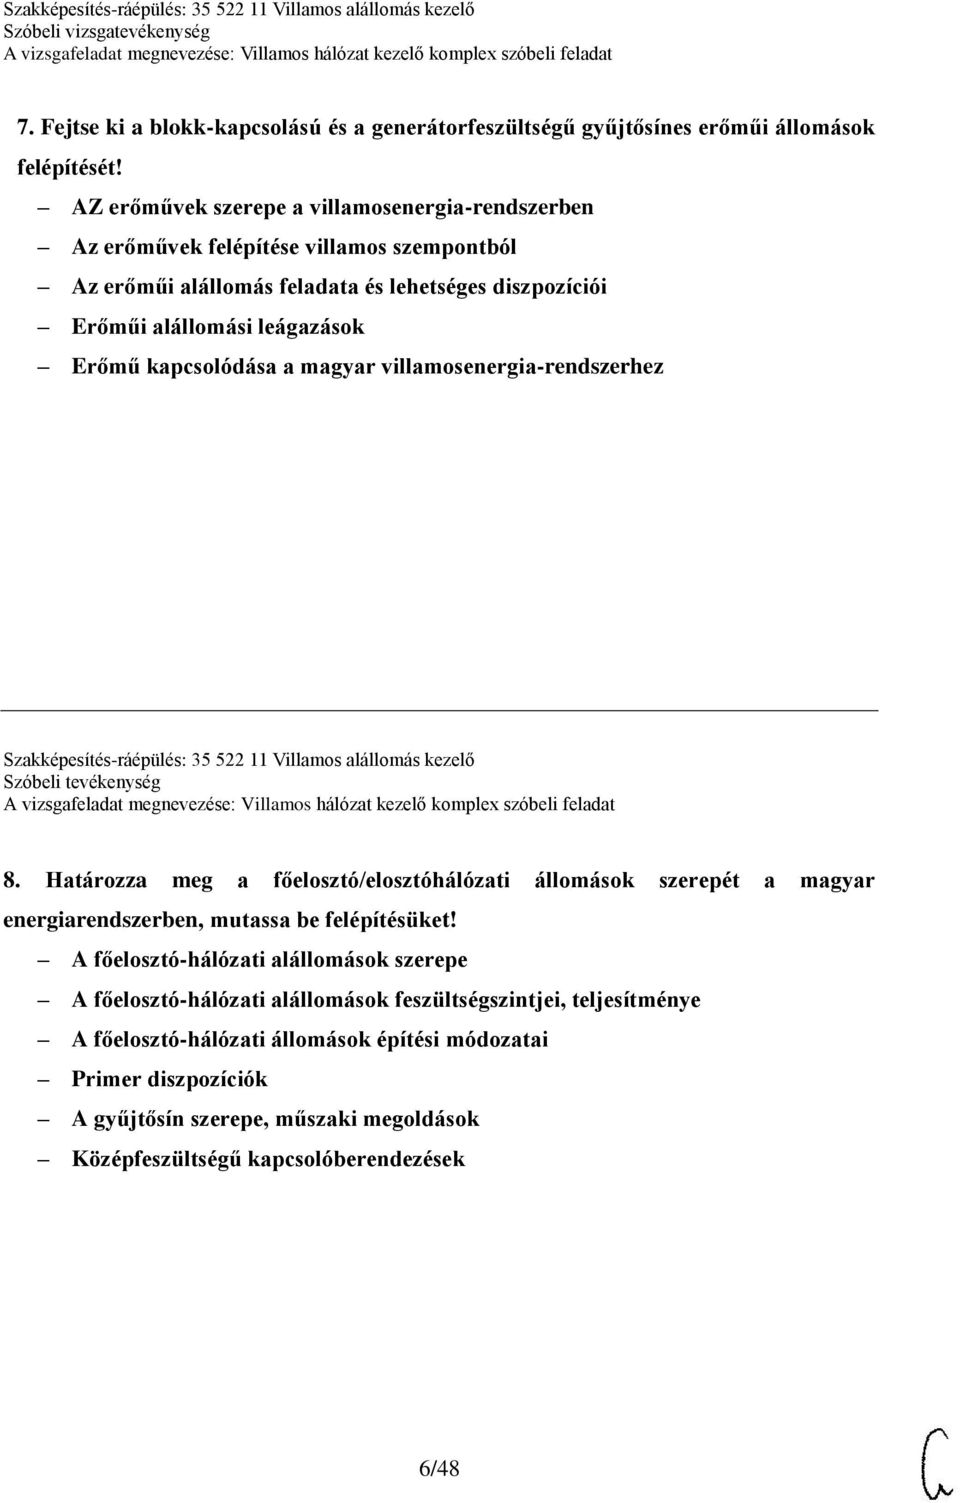 a magyar villamosenergia-rendszerhez Szakképesítés-ráépülés: 35 522 11 Villamos alállomás kezelő Szóbeli tevékenység 8.